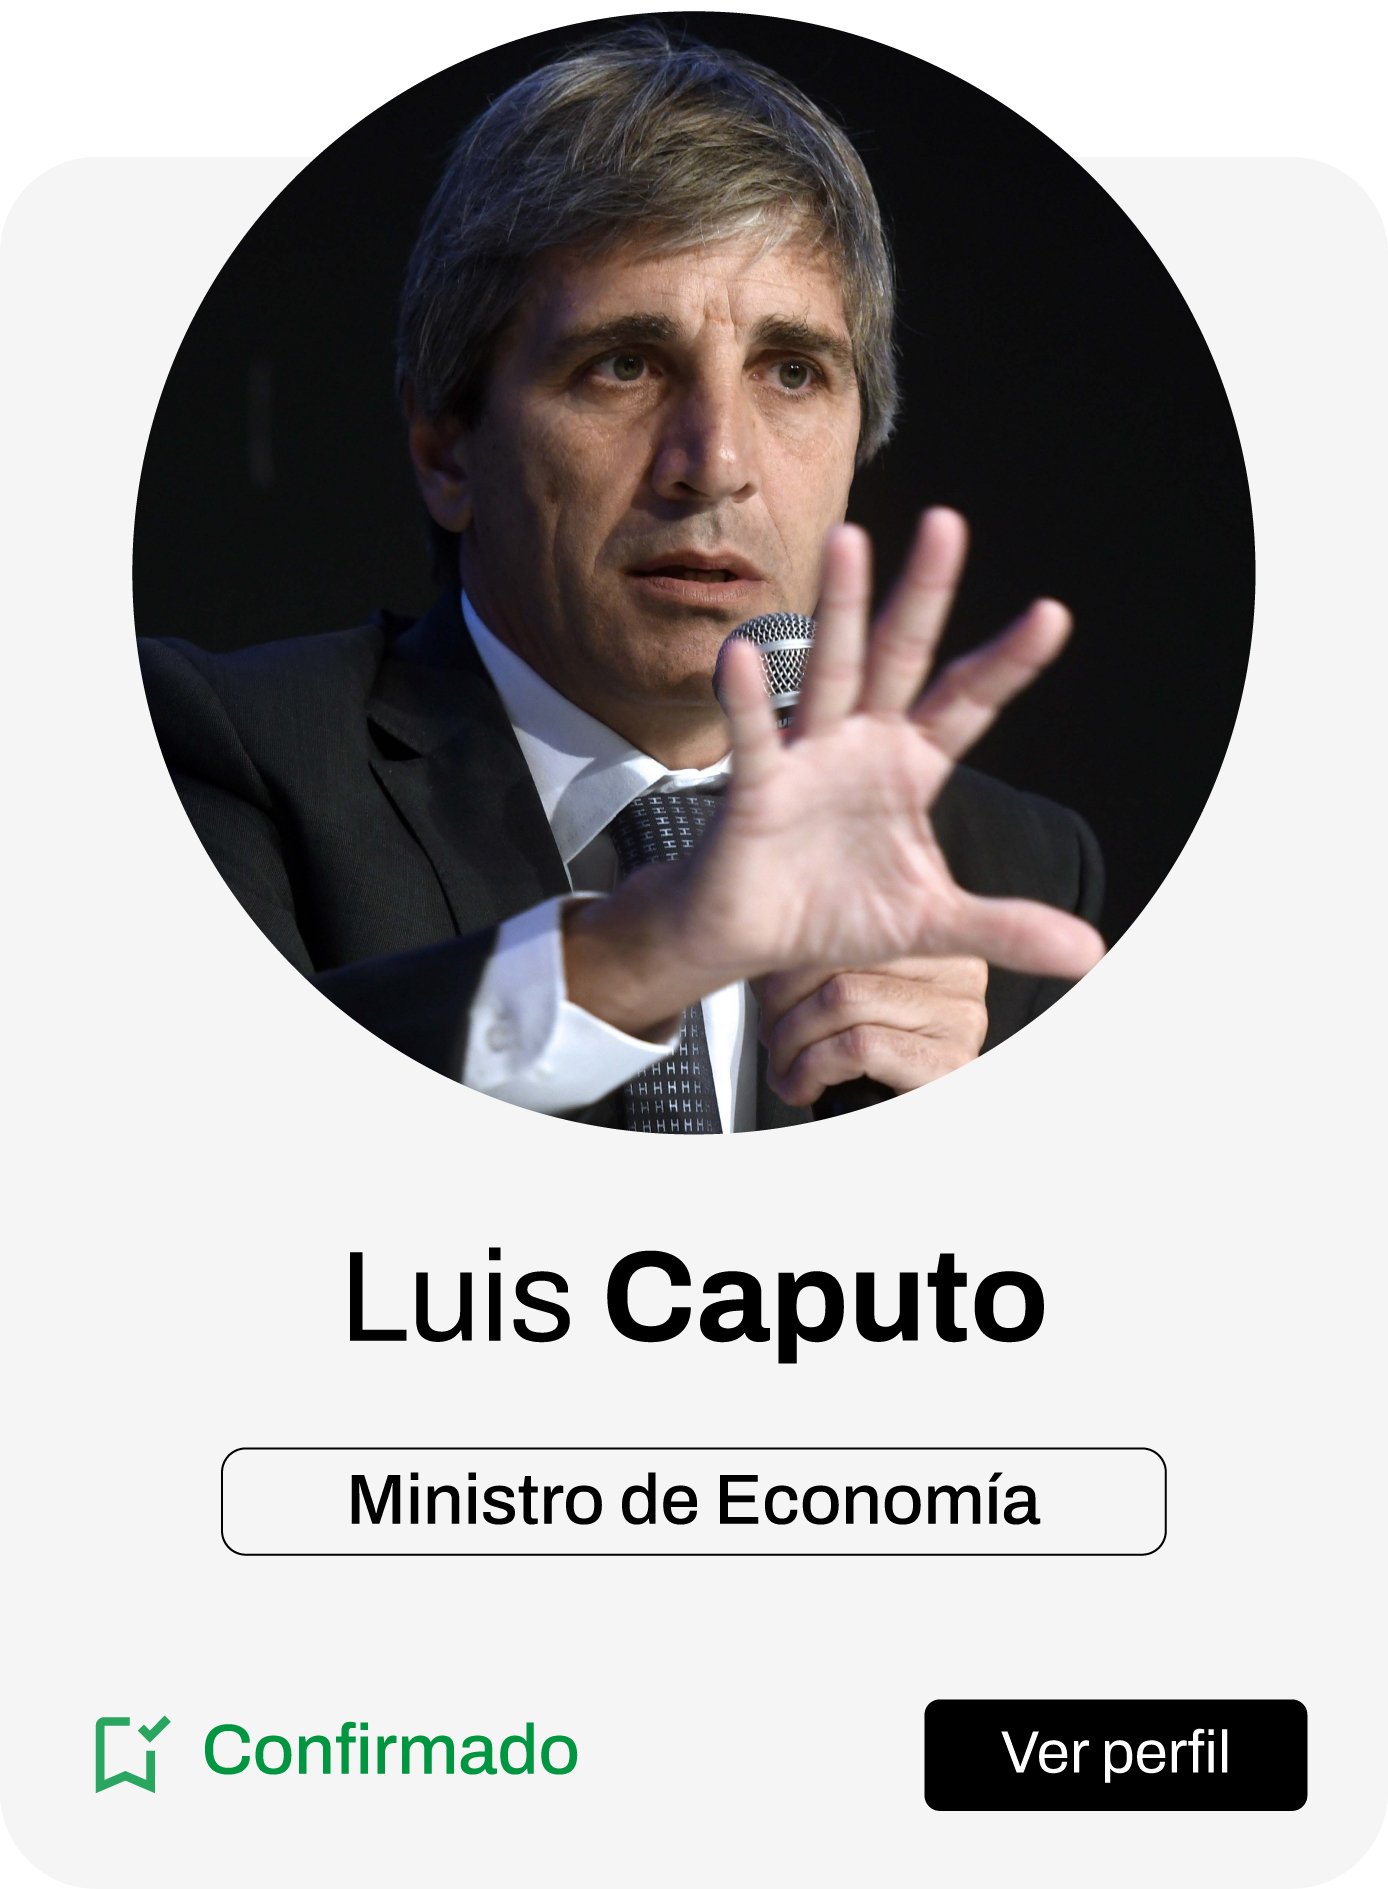 Luis Caputo